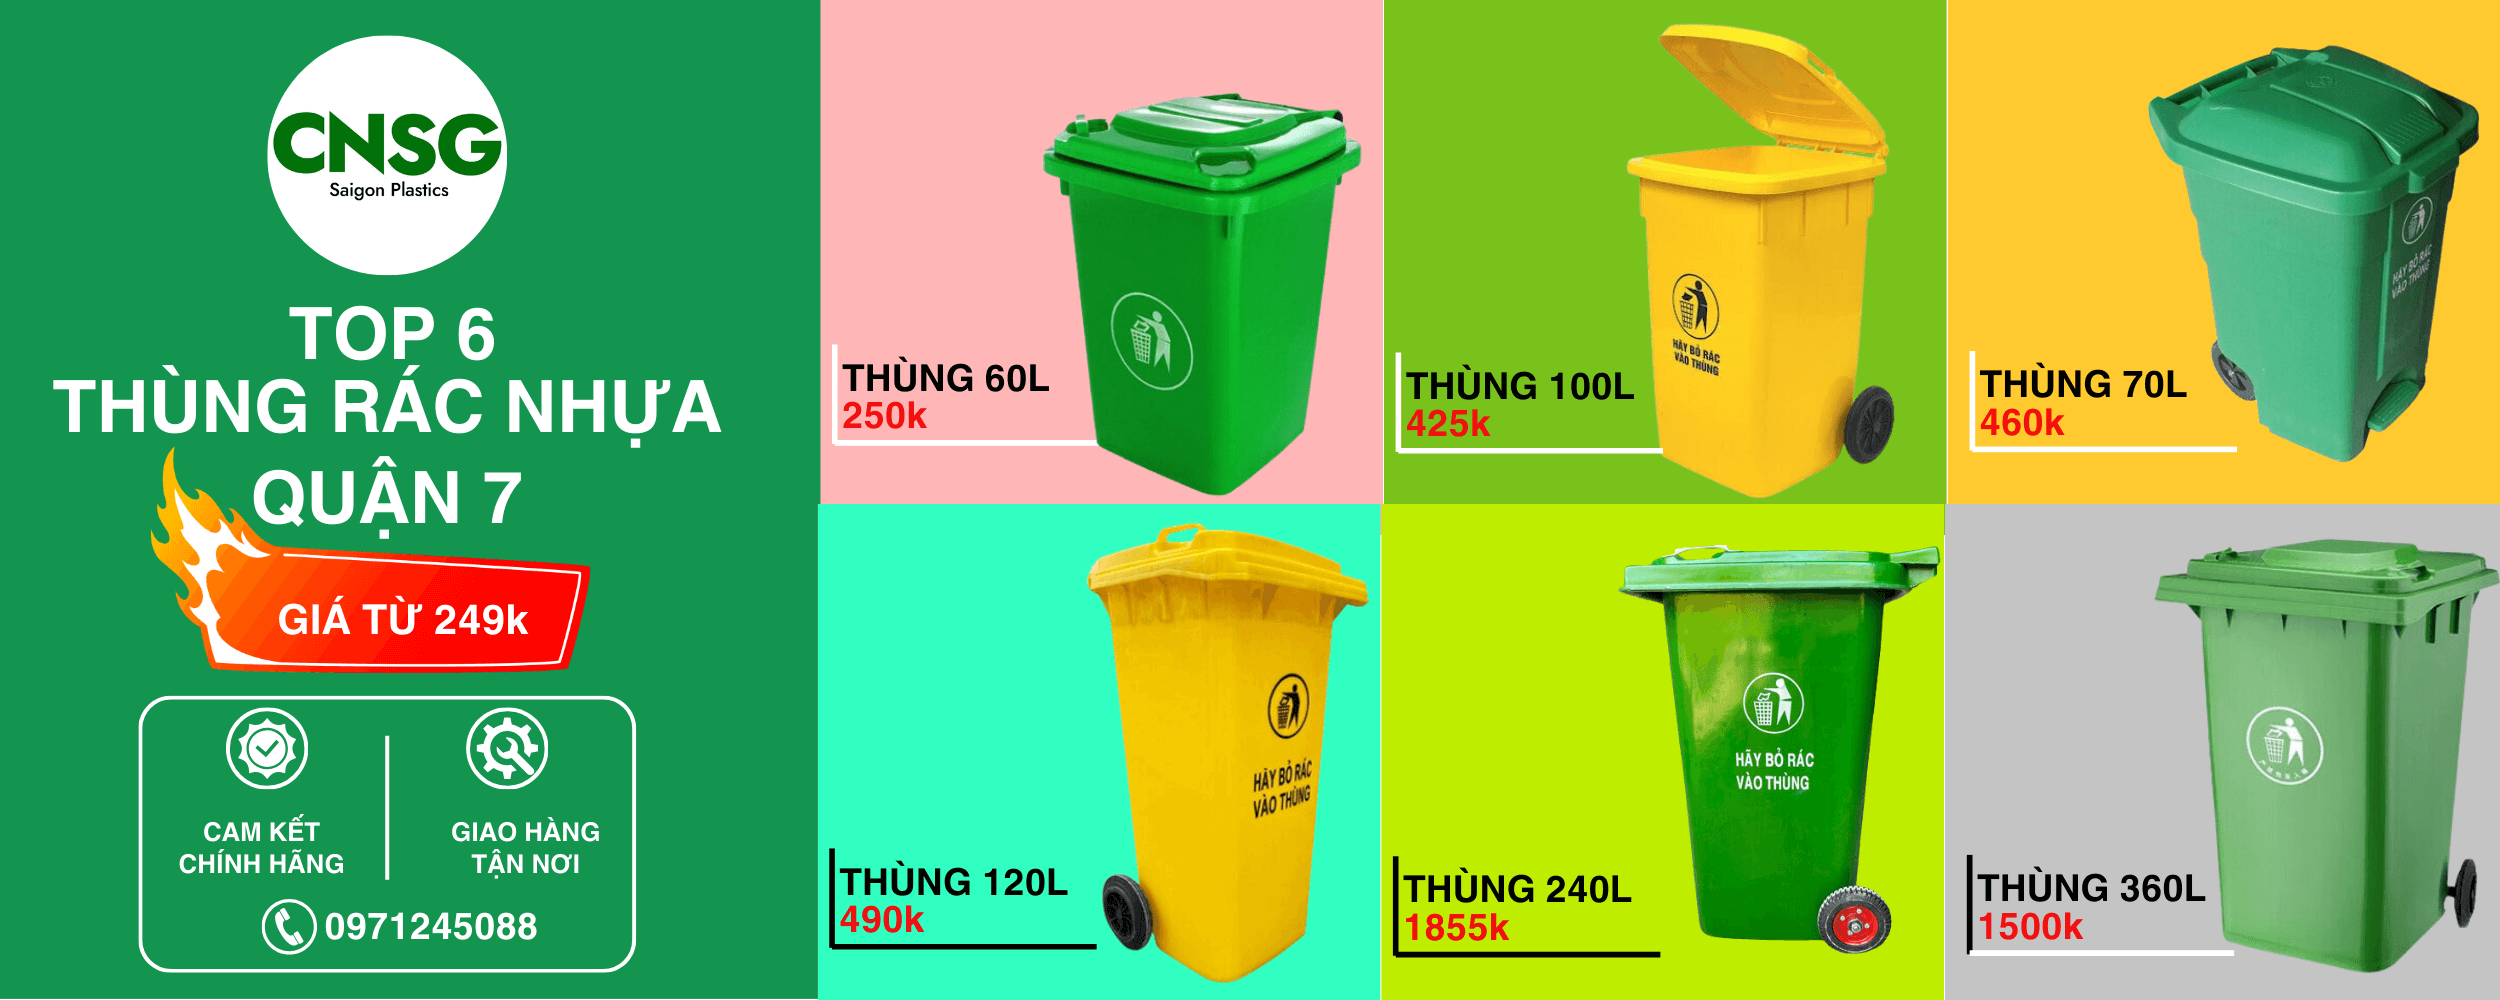 Top 6 thùng rác nhựa quận 7 (1)